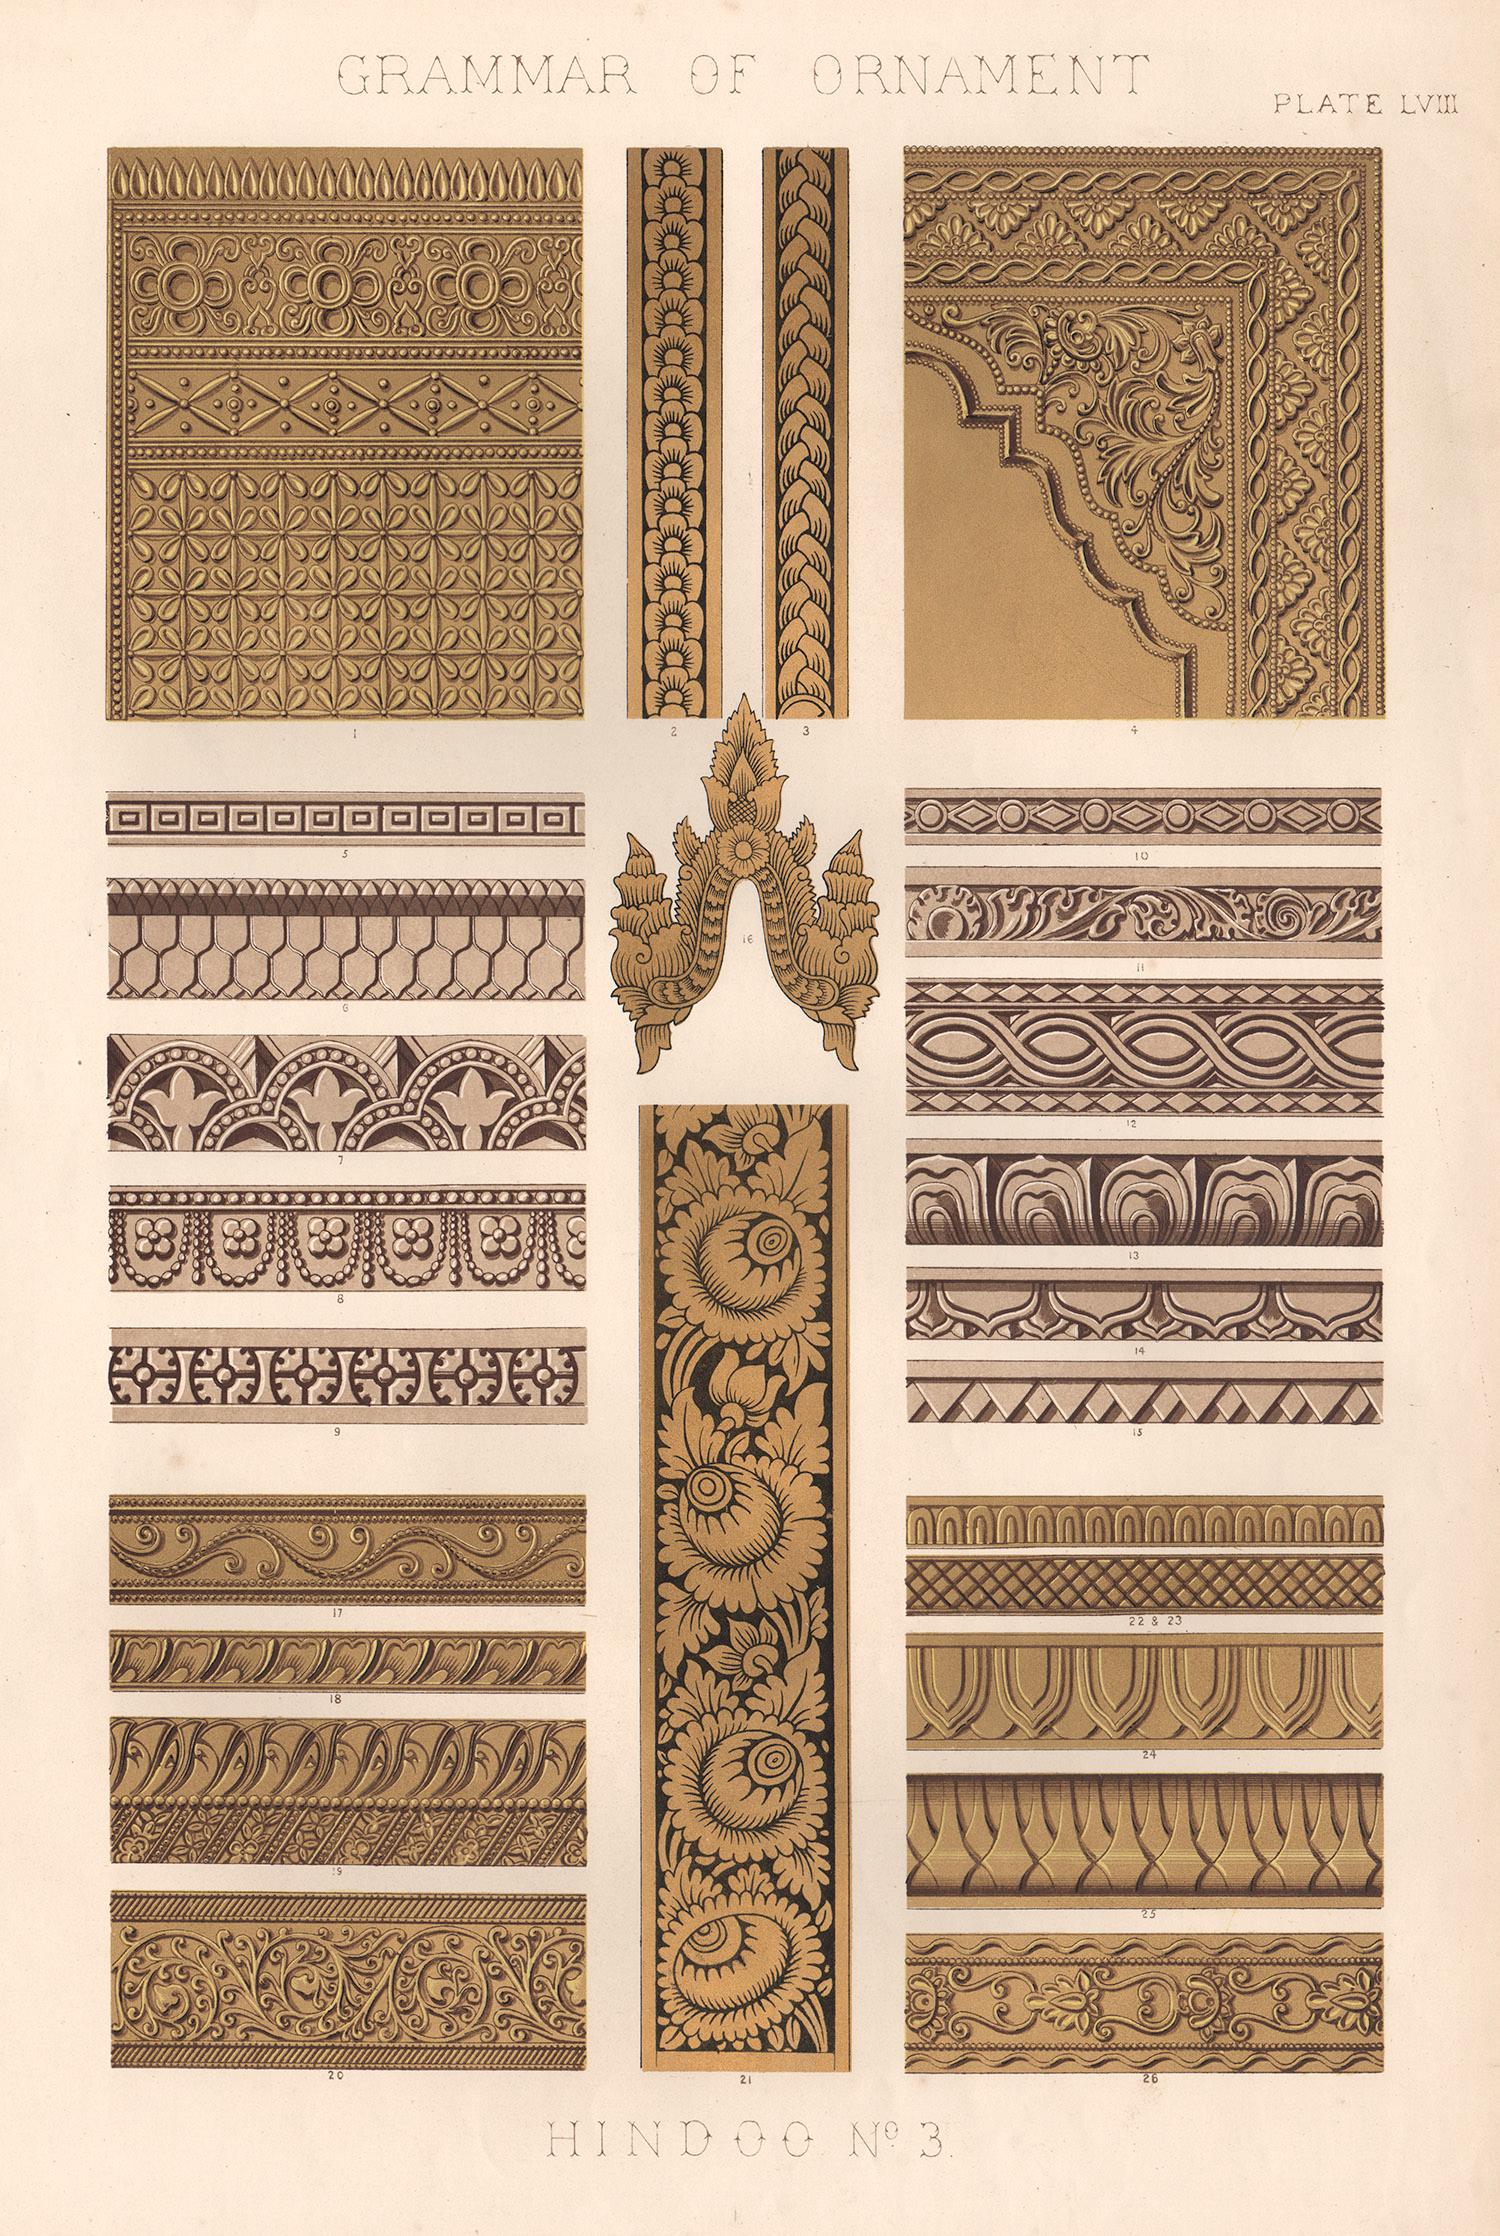 Hindoo n° 3, Grammar of Ornament, Owen Jones, fin du 19ème siècle, 1868